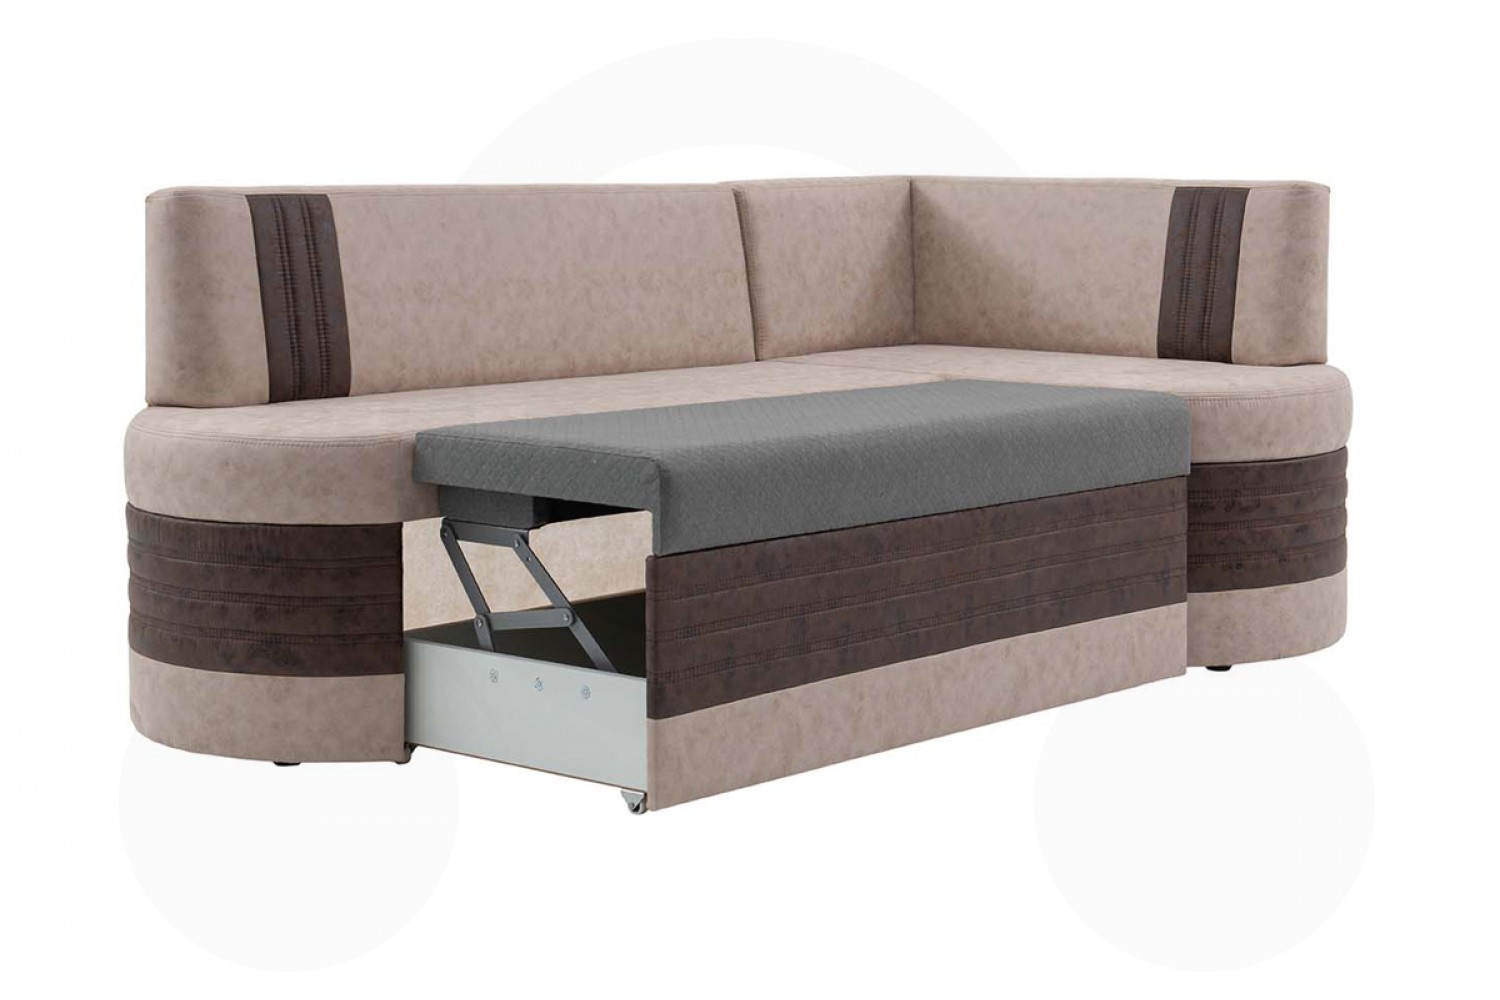 Кухонный угловой диван со спальным местом Чикаго 7к – купить в Москве поцене 35 088 руб. в интернет-магазине мебели Аната-Мебель